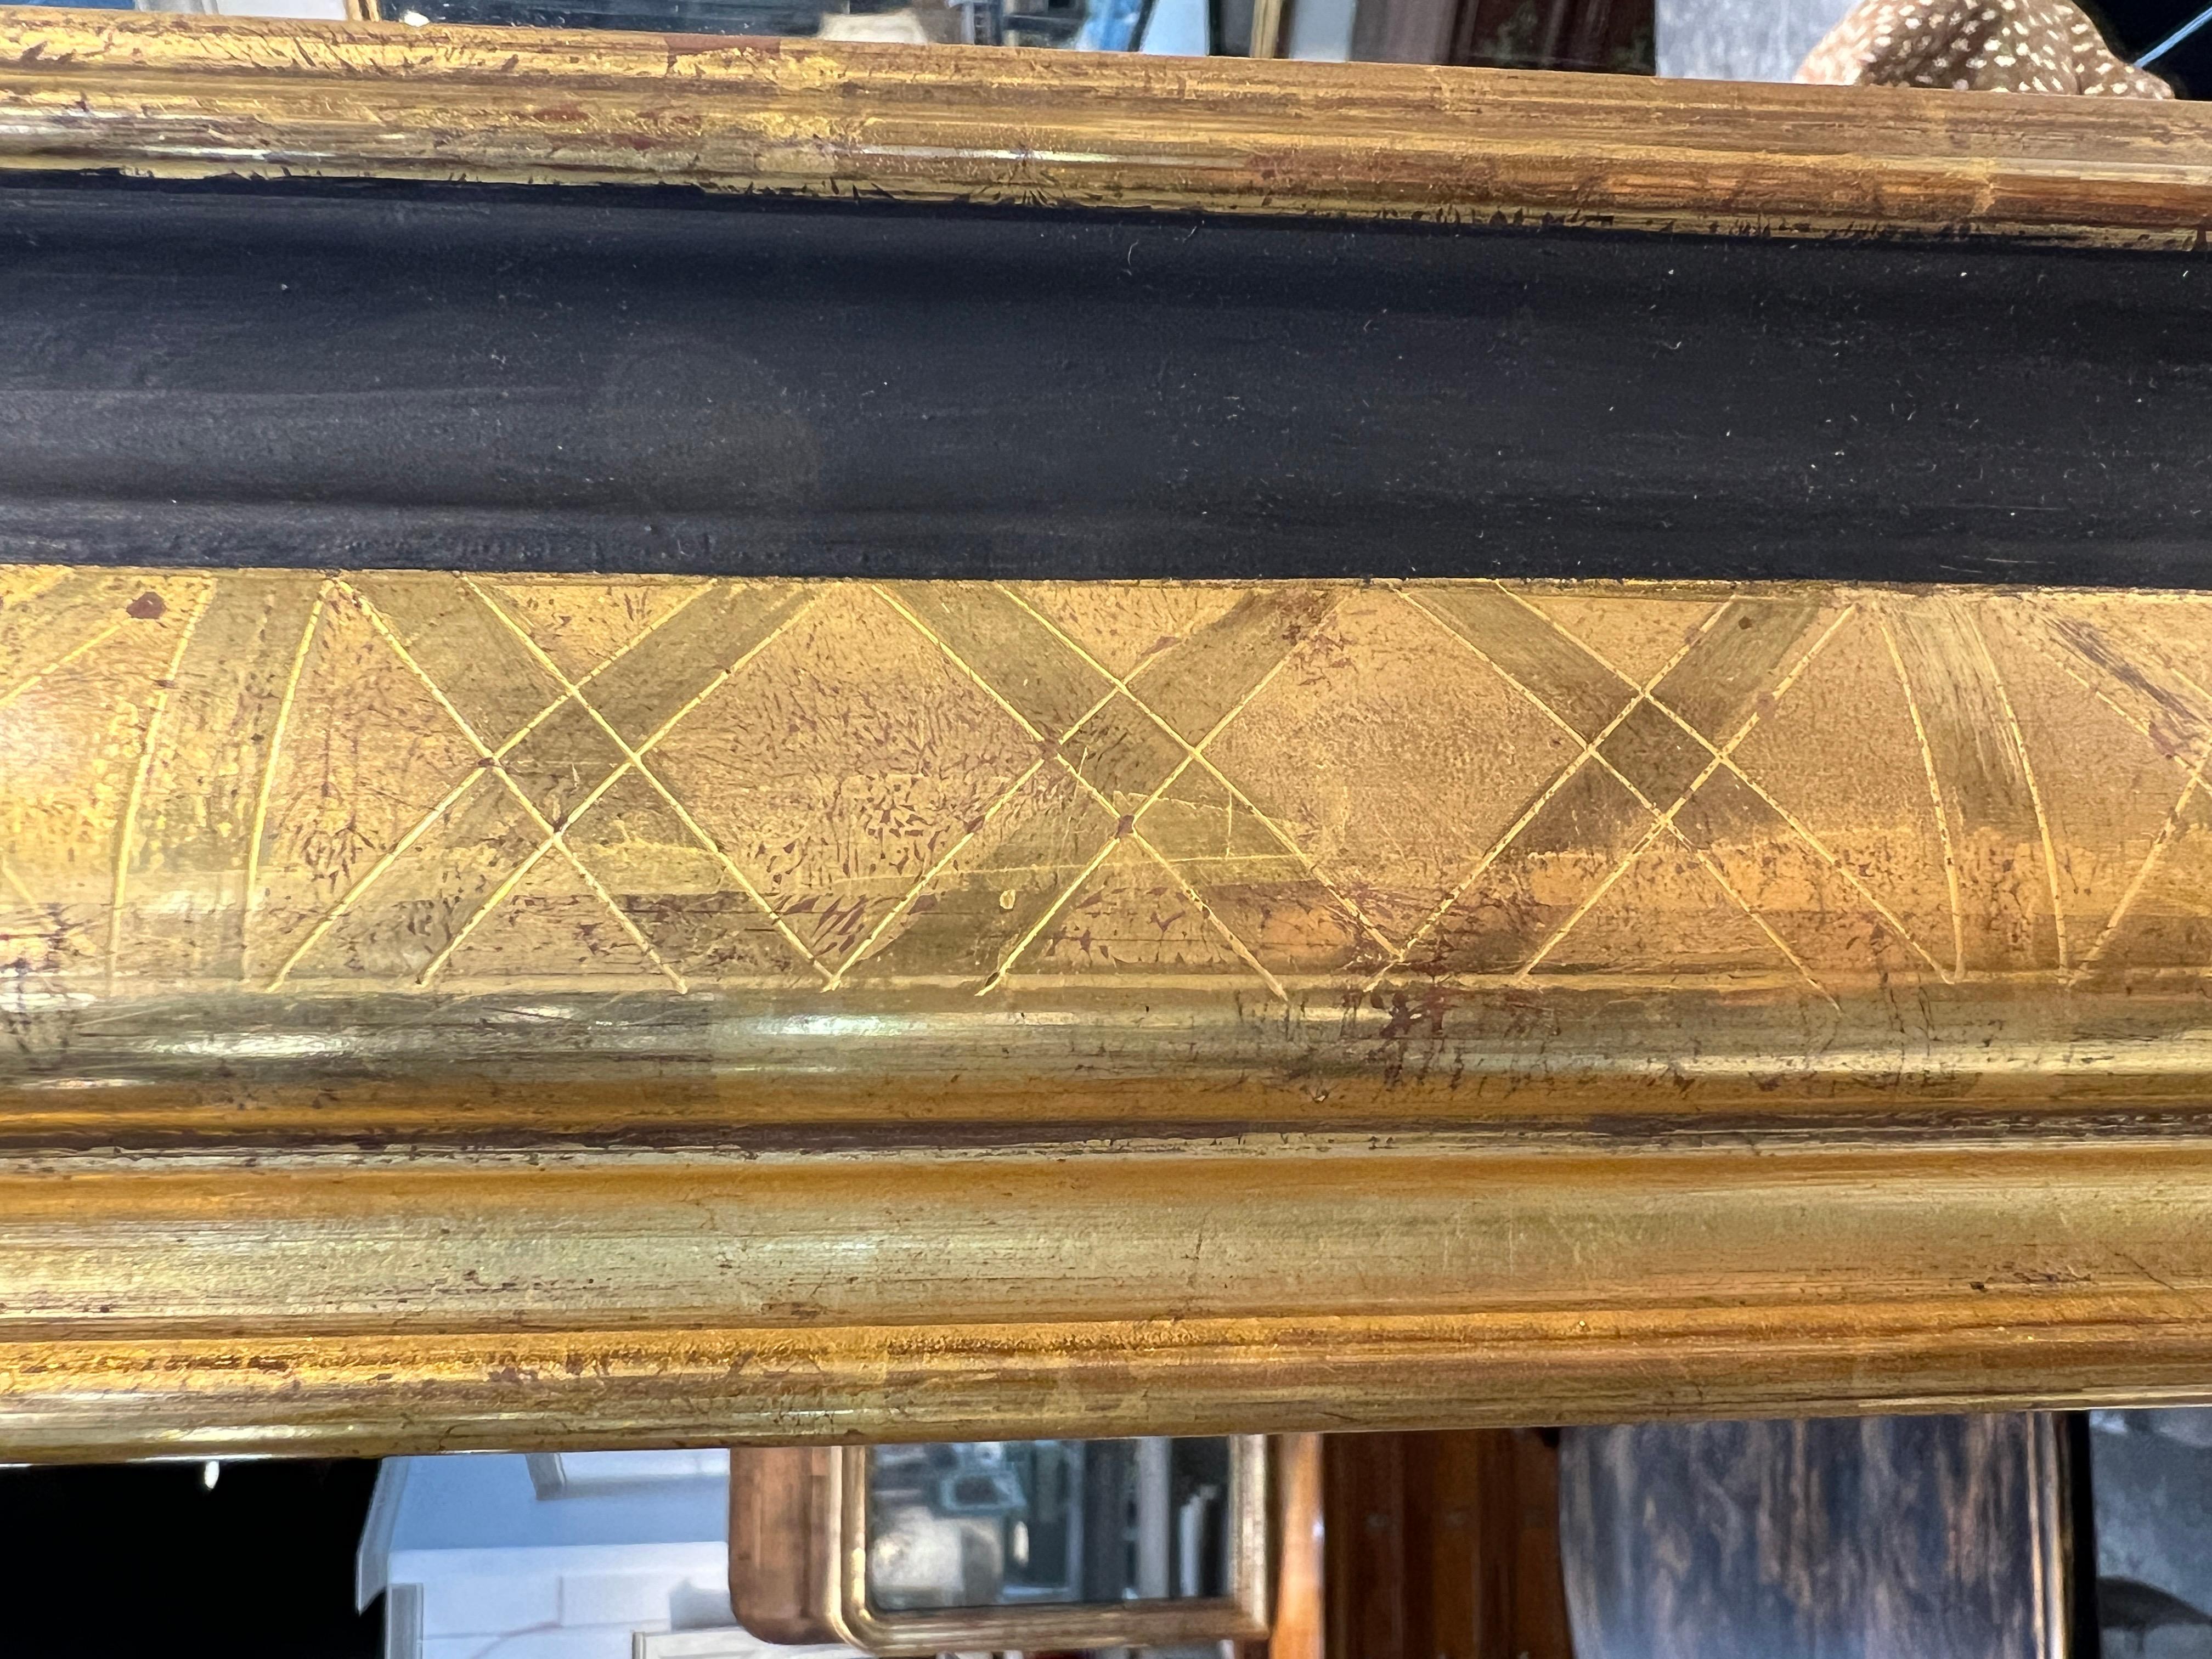 Belle paire de miroirs de style Louis Philippe, gravés et dorés sur des cadres en bois ancien, accentués par une bande peinte en noir.

Cadre et support en bois ancien, dorure appliquée de façon experte sur le cadre gravé.

Les cadres sont